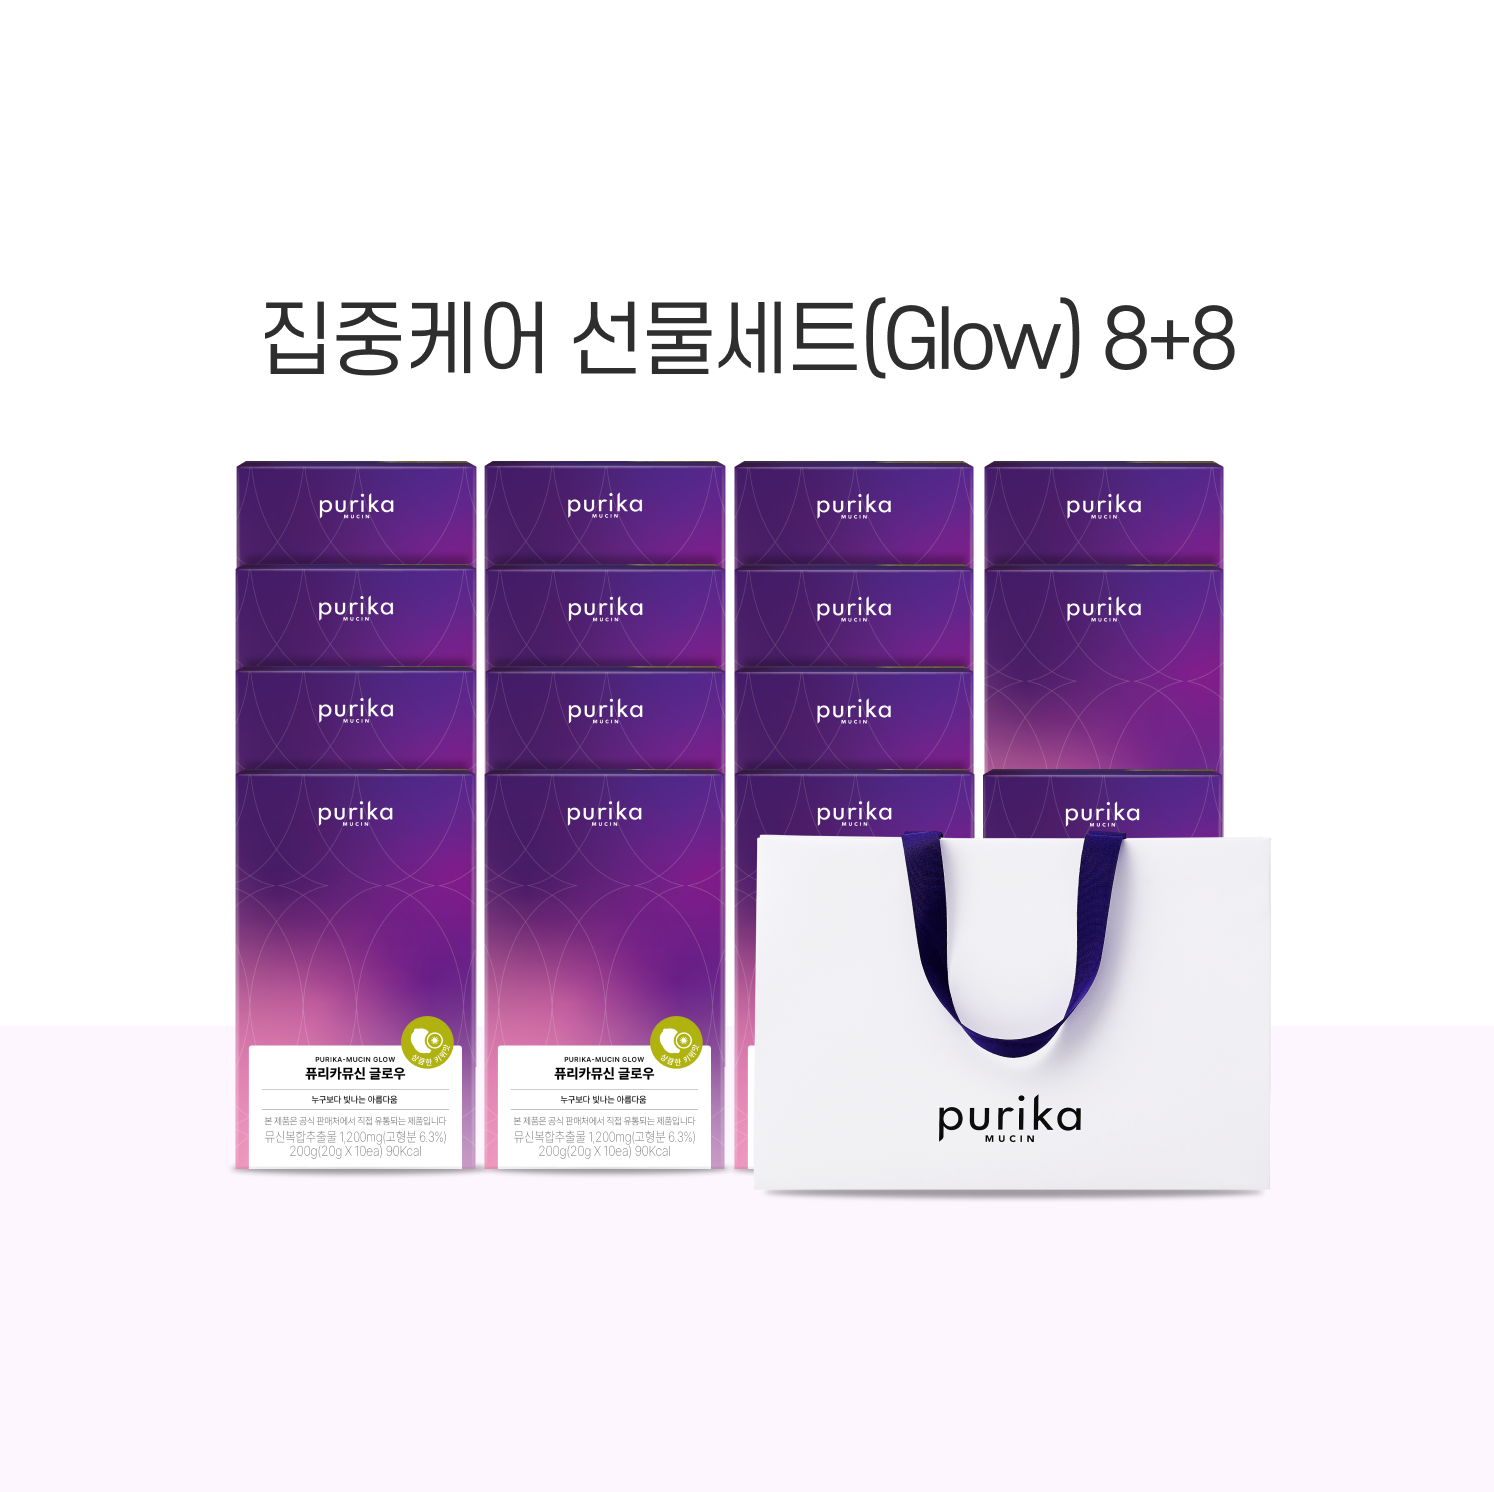 뮤신 Glow 8+8 선물세트(16box) + 쇼핑백 증정(1매)